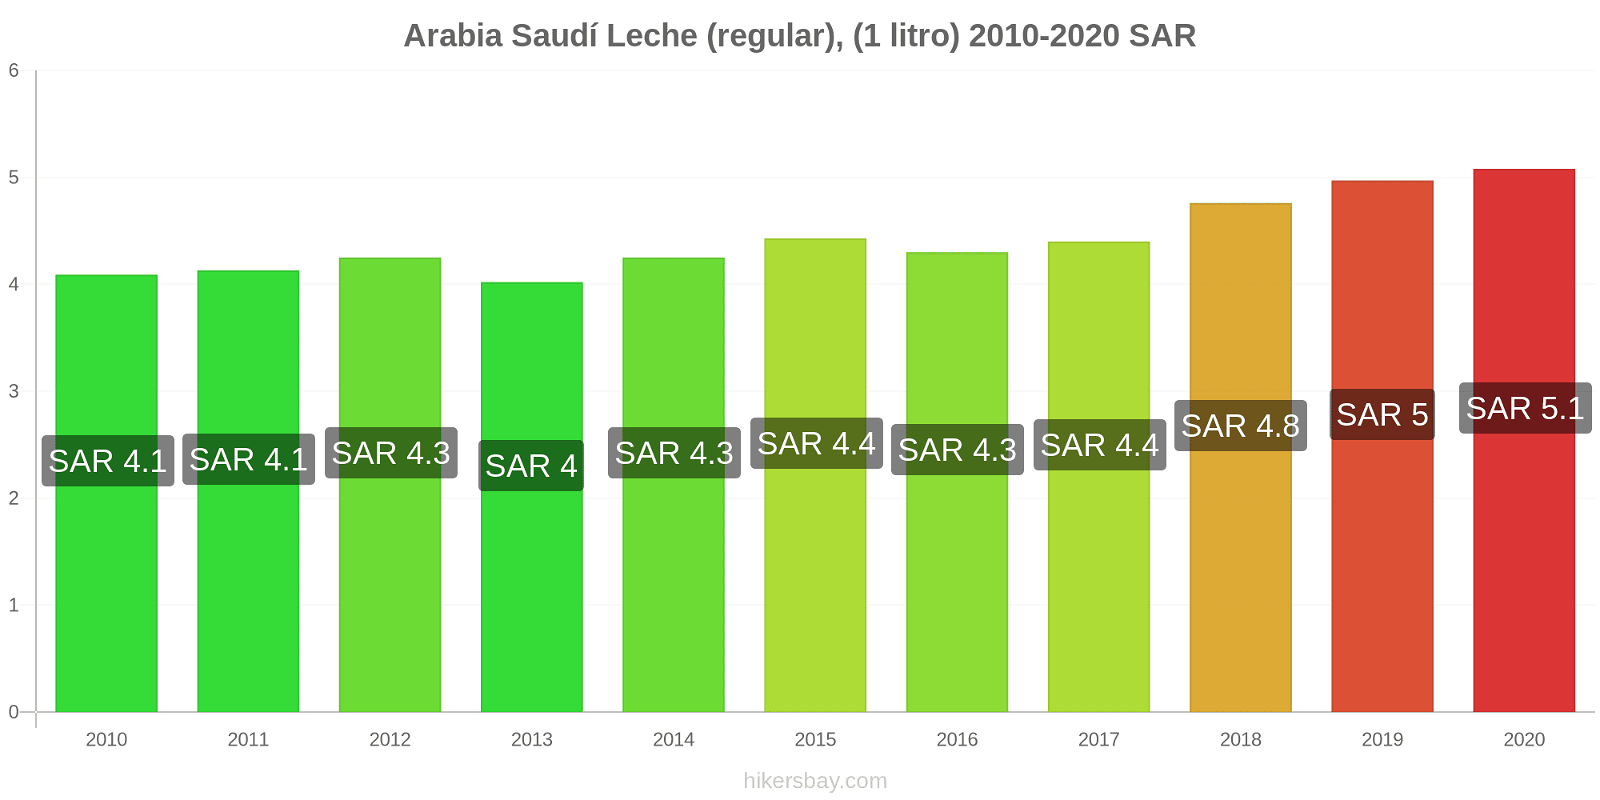 Arabia Saudí cambios de precios Leche (Regular), (1 litro) hikersbay.com